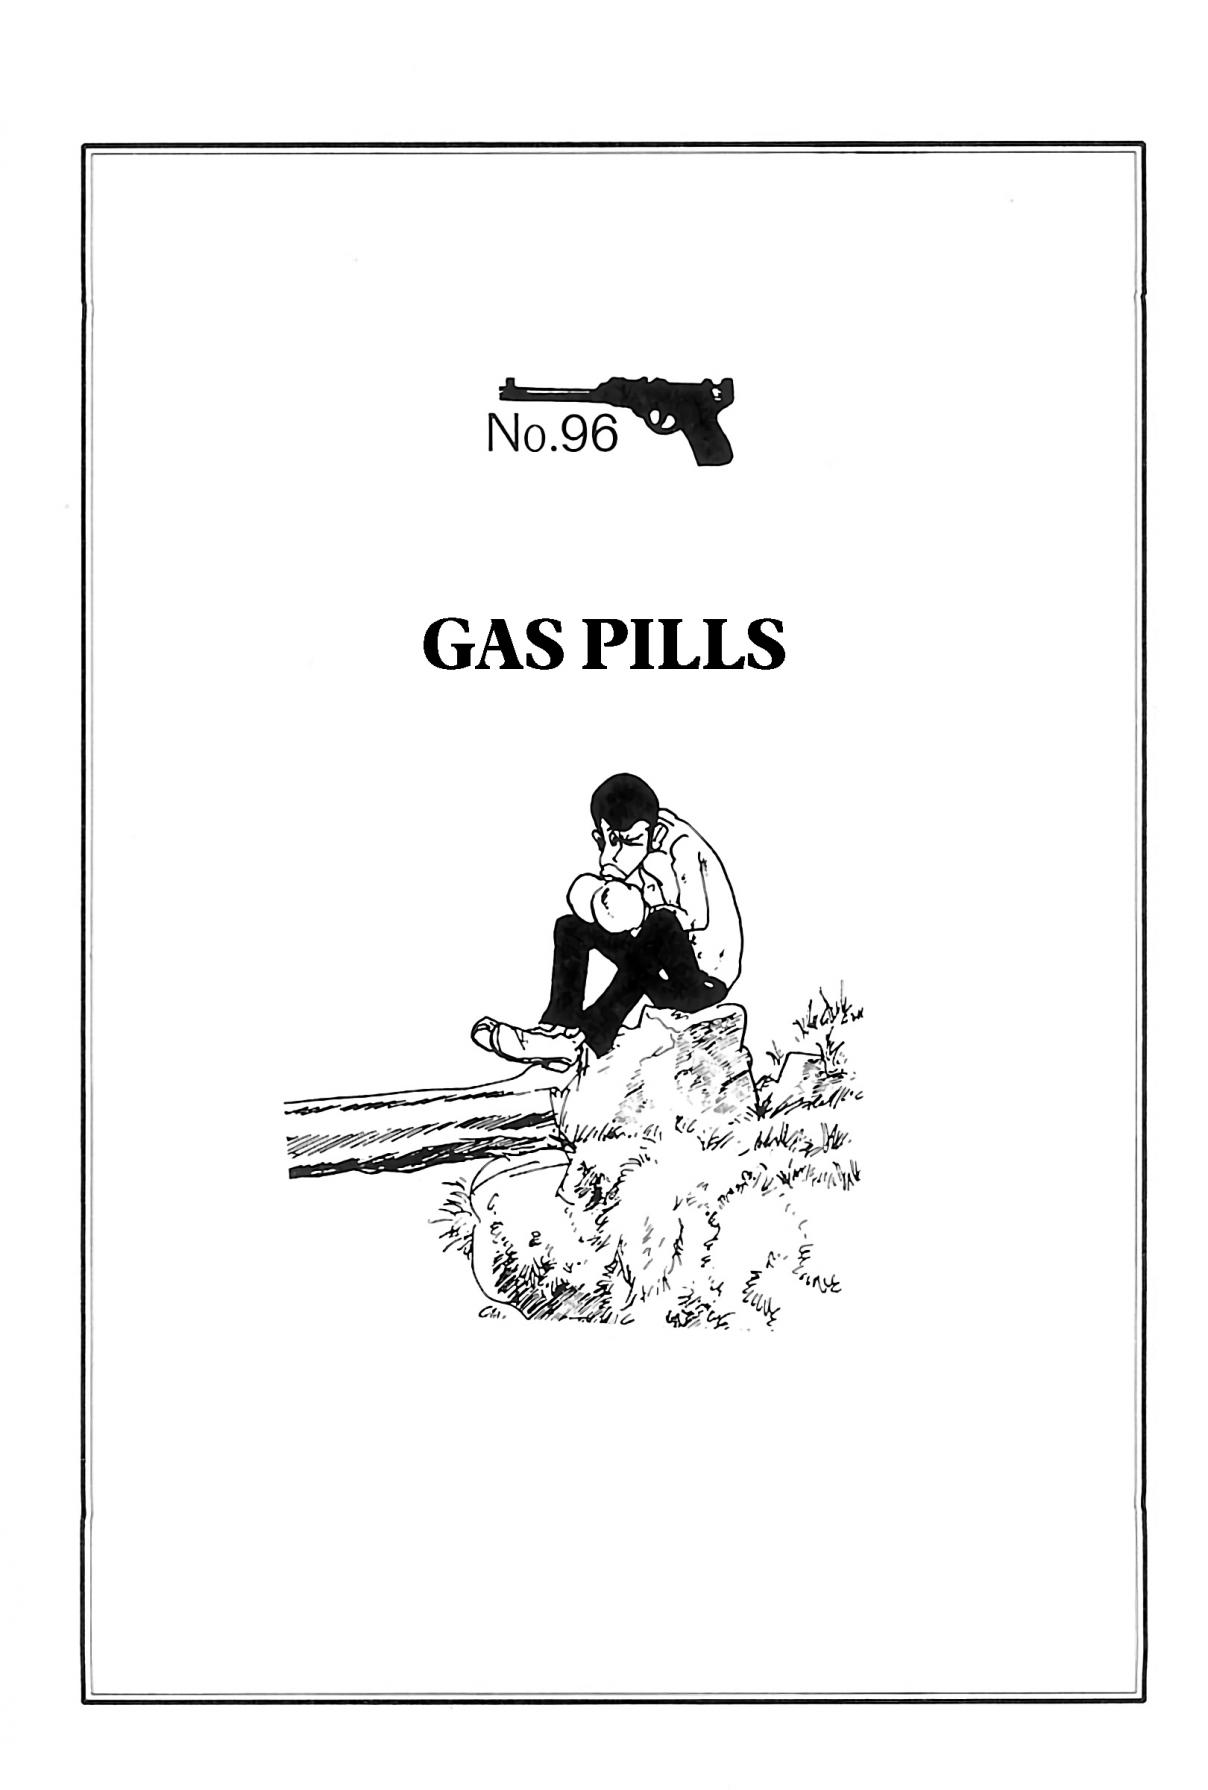 Shin Lupin III Vol. 9 Ch. 96 Gas Pills